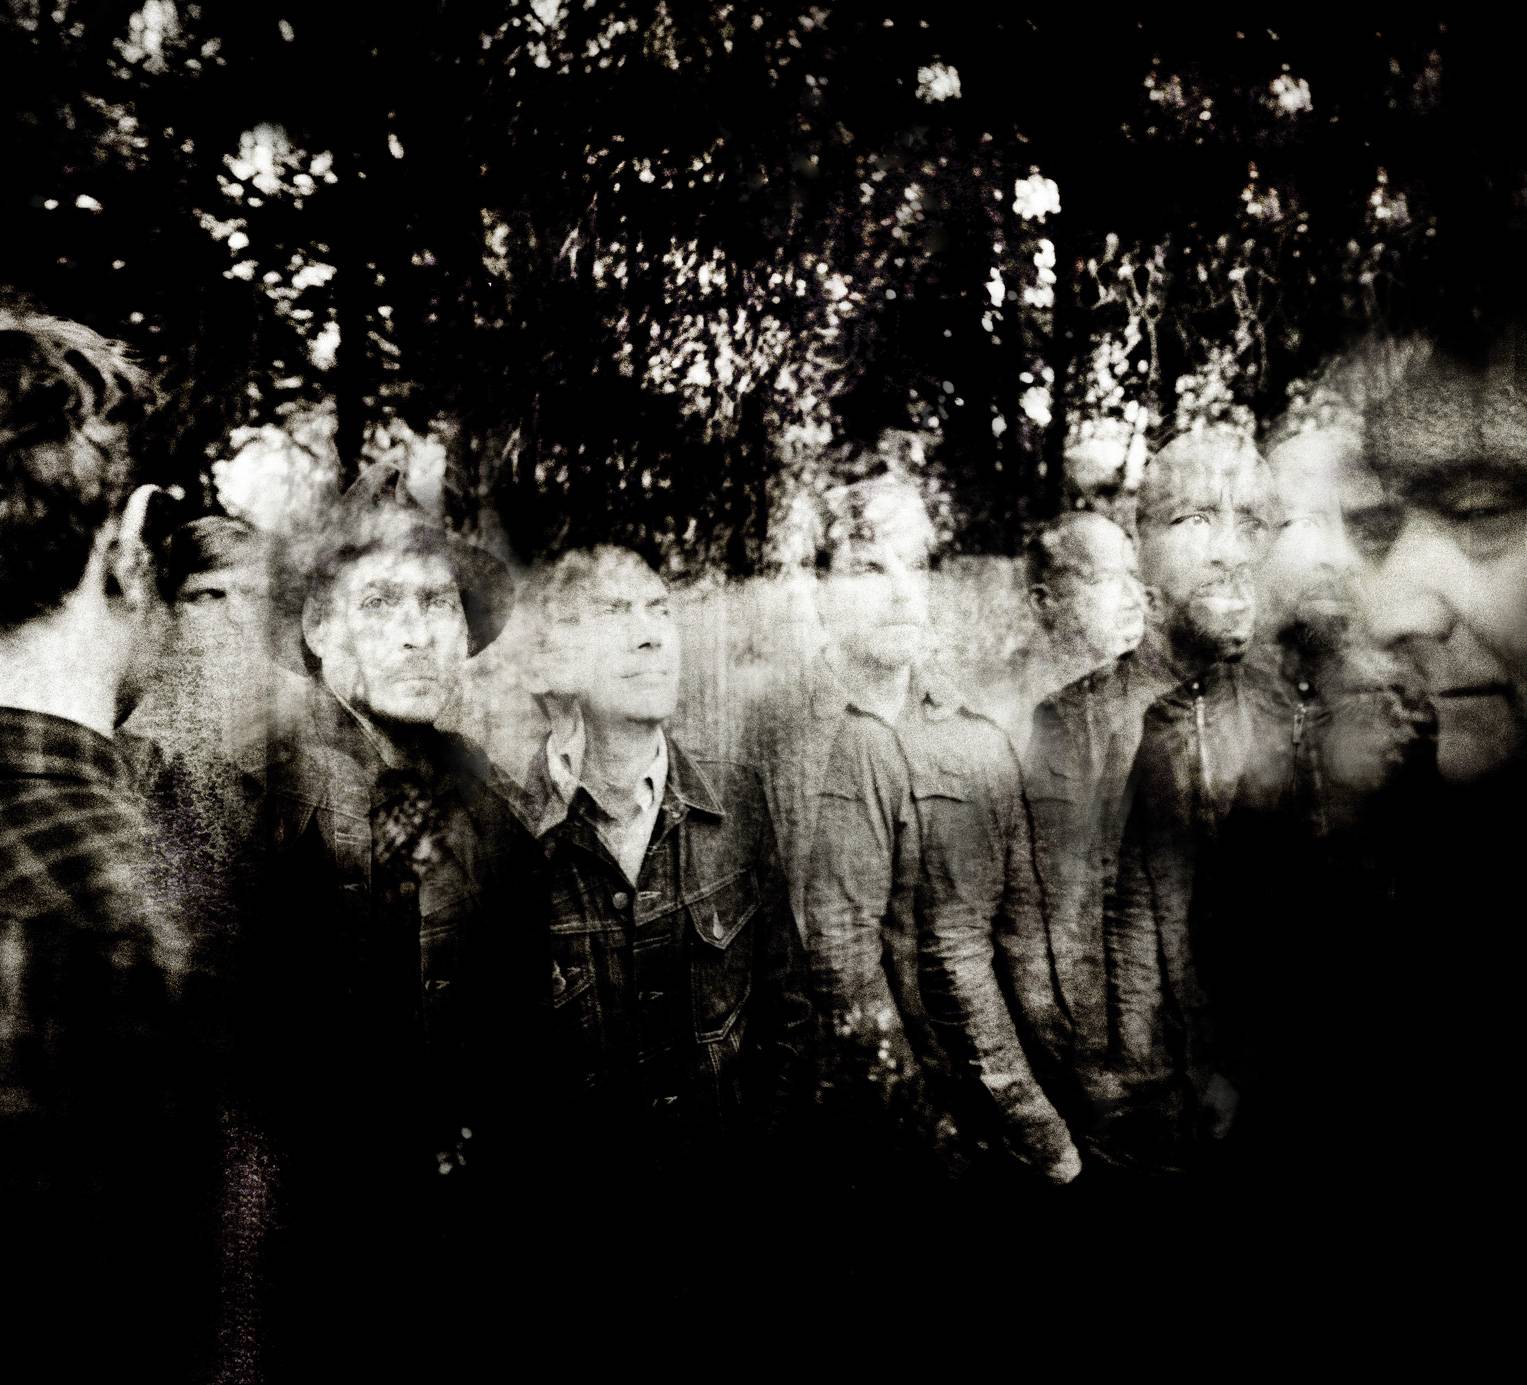 Le groupe Tindersticks photographié par Richard Dumas.